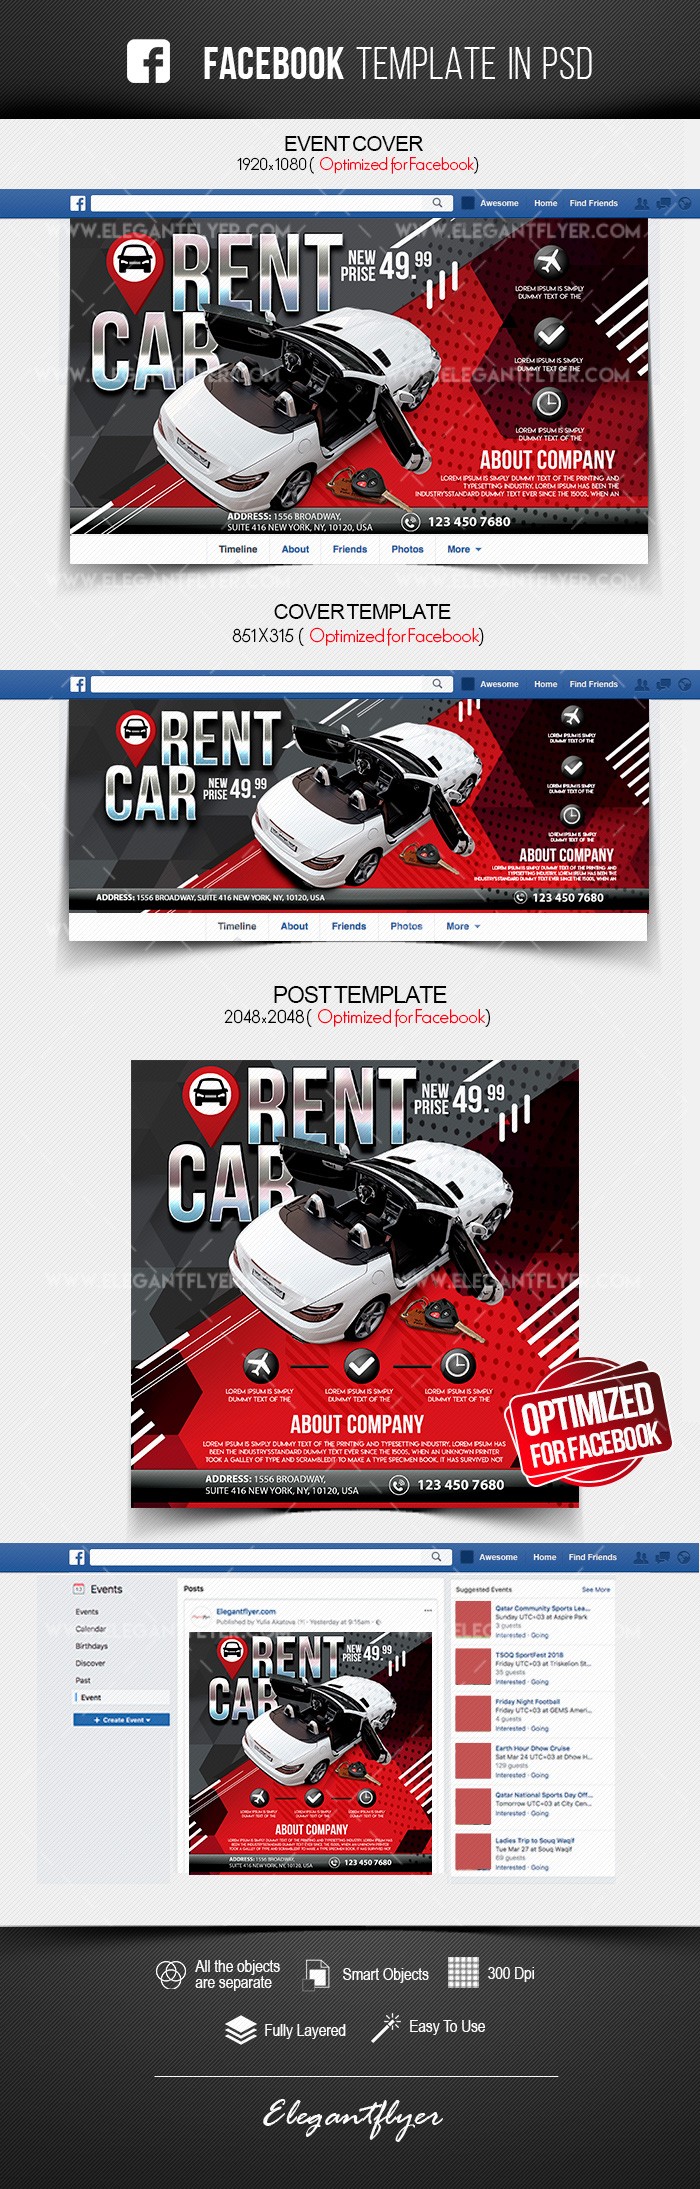 Rent a Car Facebook by ElegantFlyer